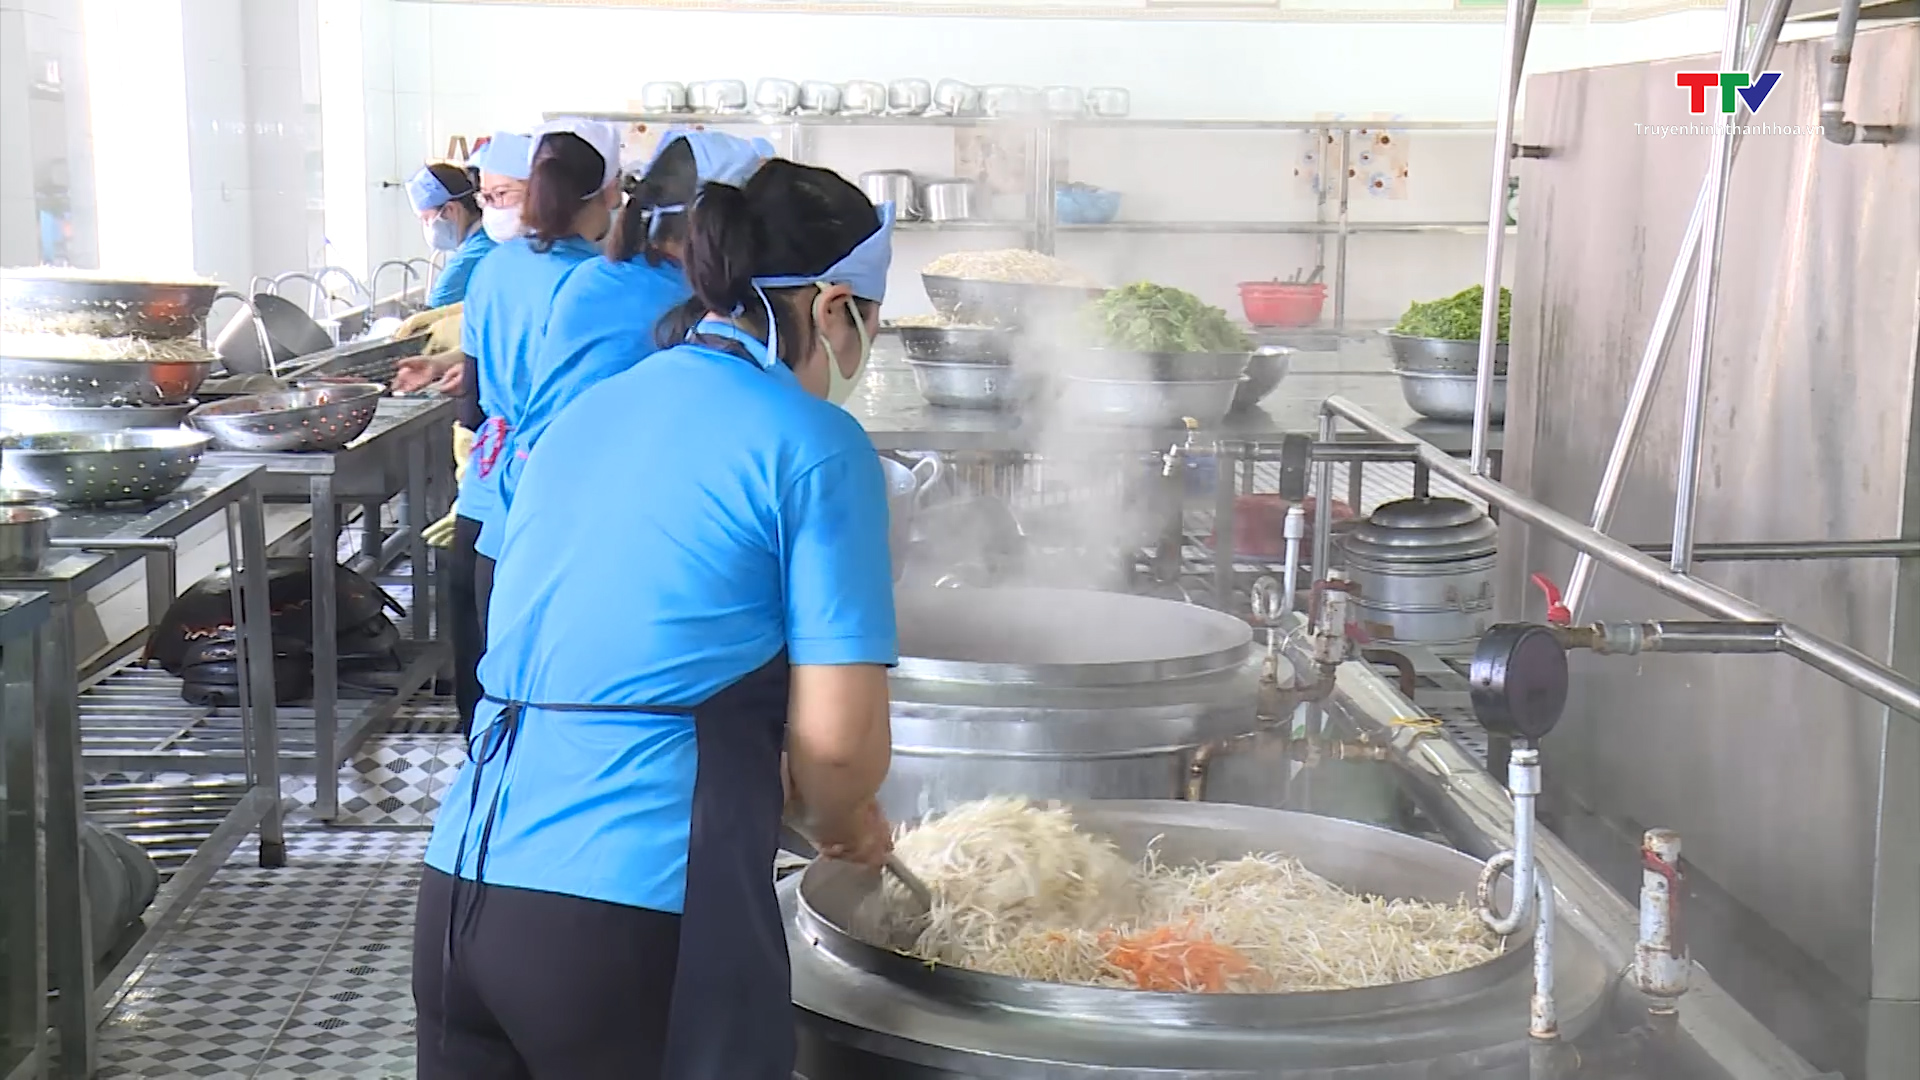 Thành phố tăng cường chấn chỉnh các bếp ăn bán trú tại các trường học- Ảnh 3.